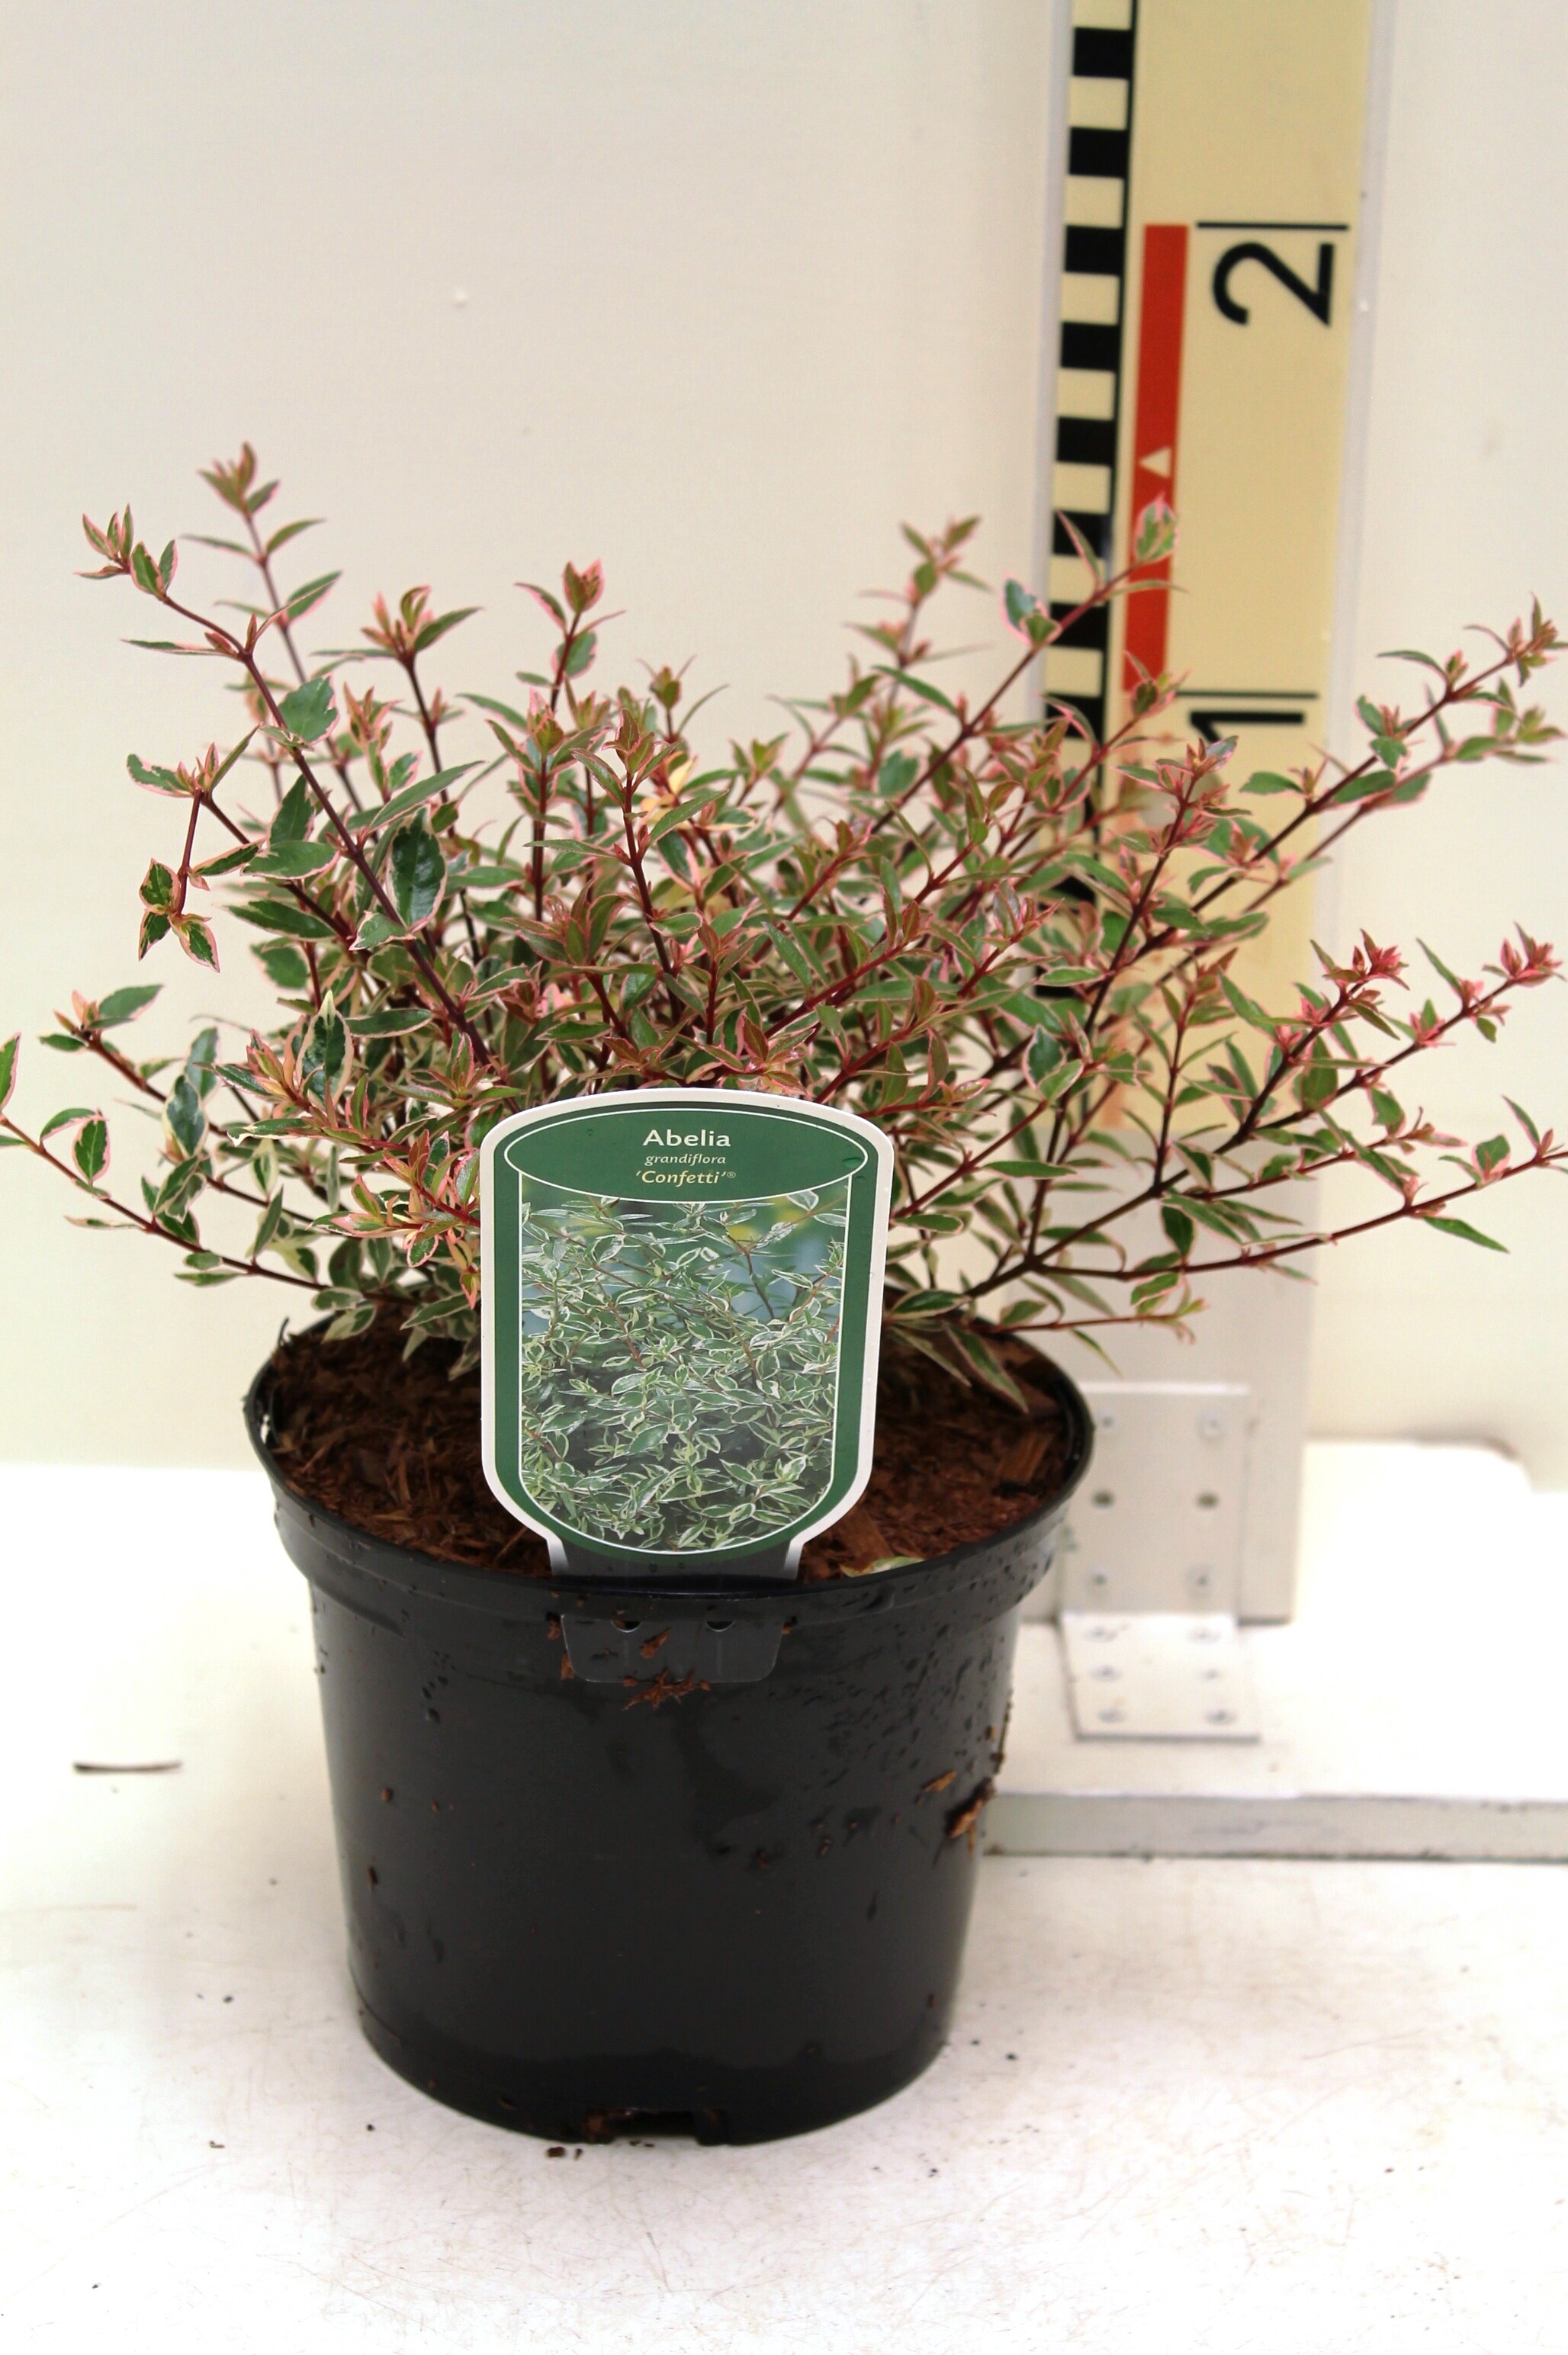 Abelia grandiflora 'Confetti' (R)